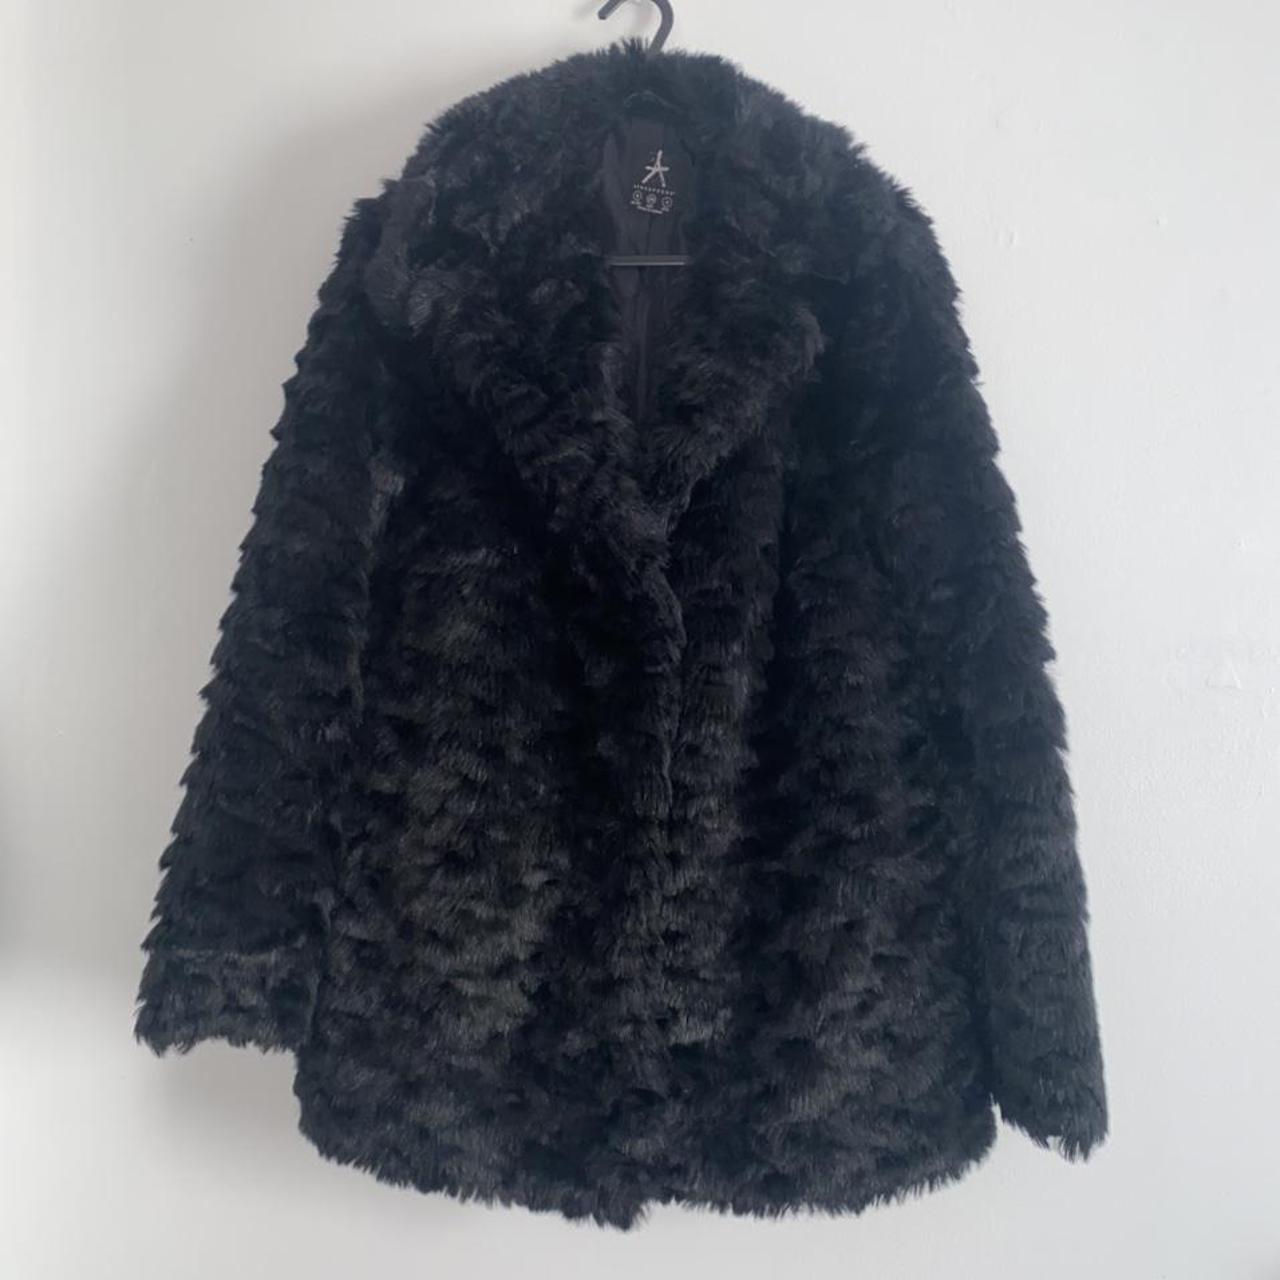 Primark black collared fur coat -amazing condition... - Depop